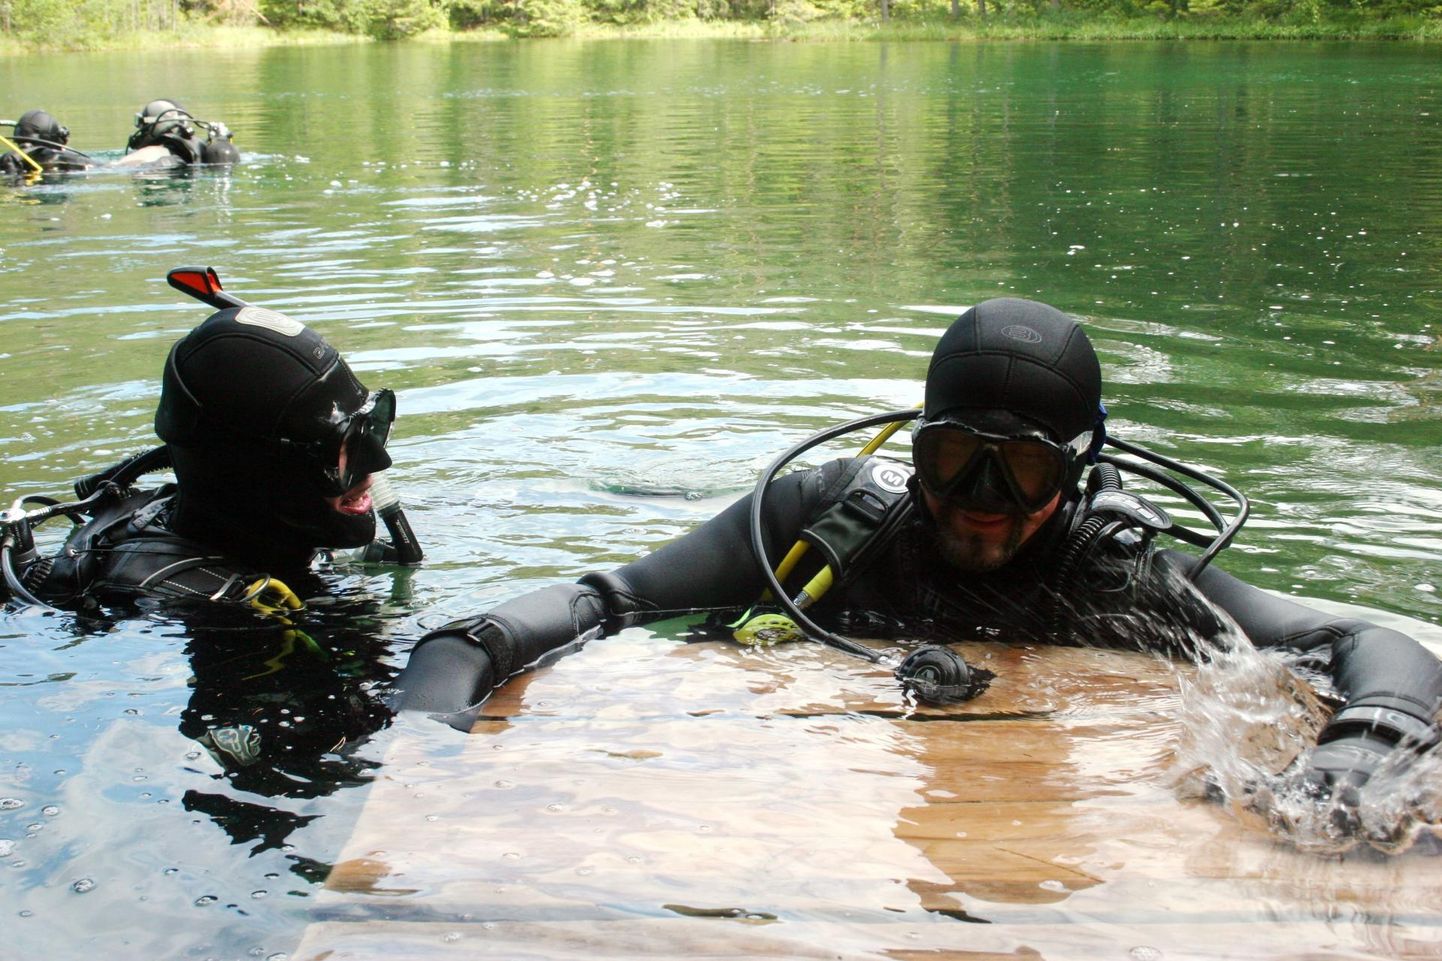 Rohekassinise veega Äntu Sinijärv saab kogu oma vee allikatest. Järv on populaarne sukeldumiskoht.